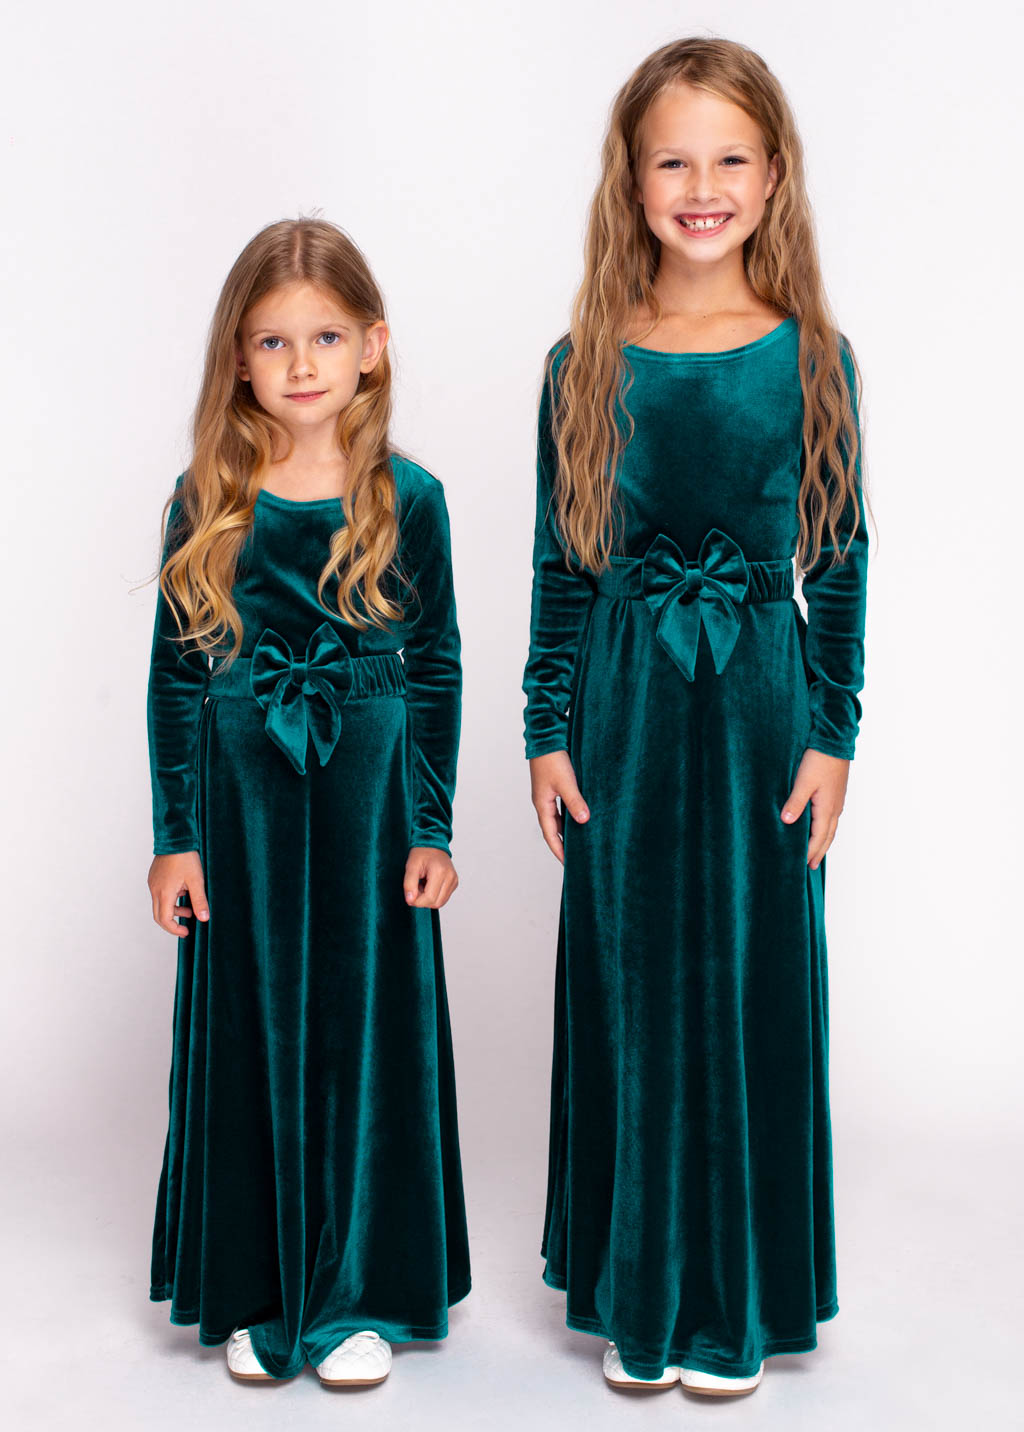 Mommy and me teal green long velvet dresses